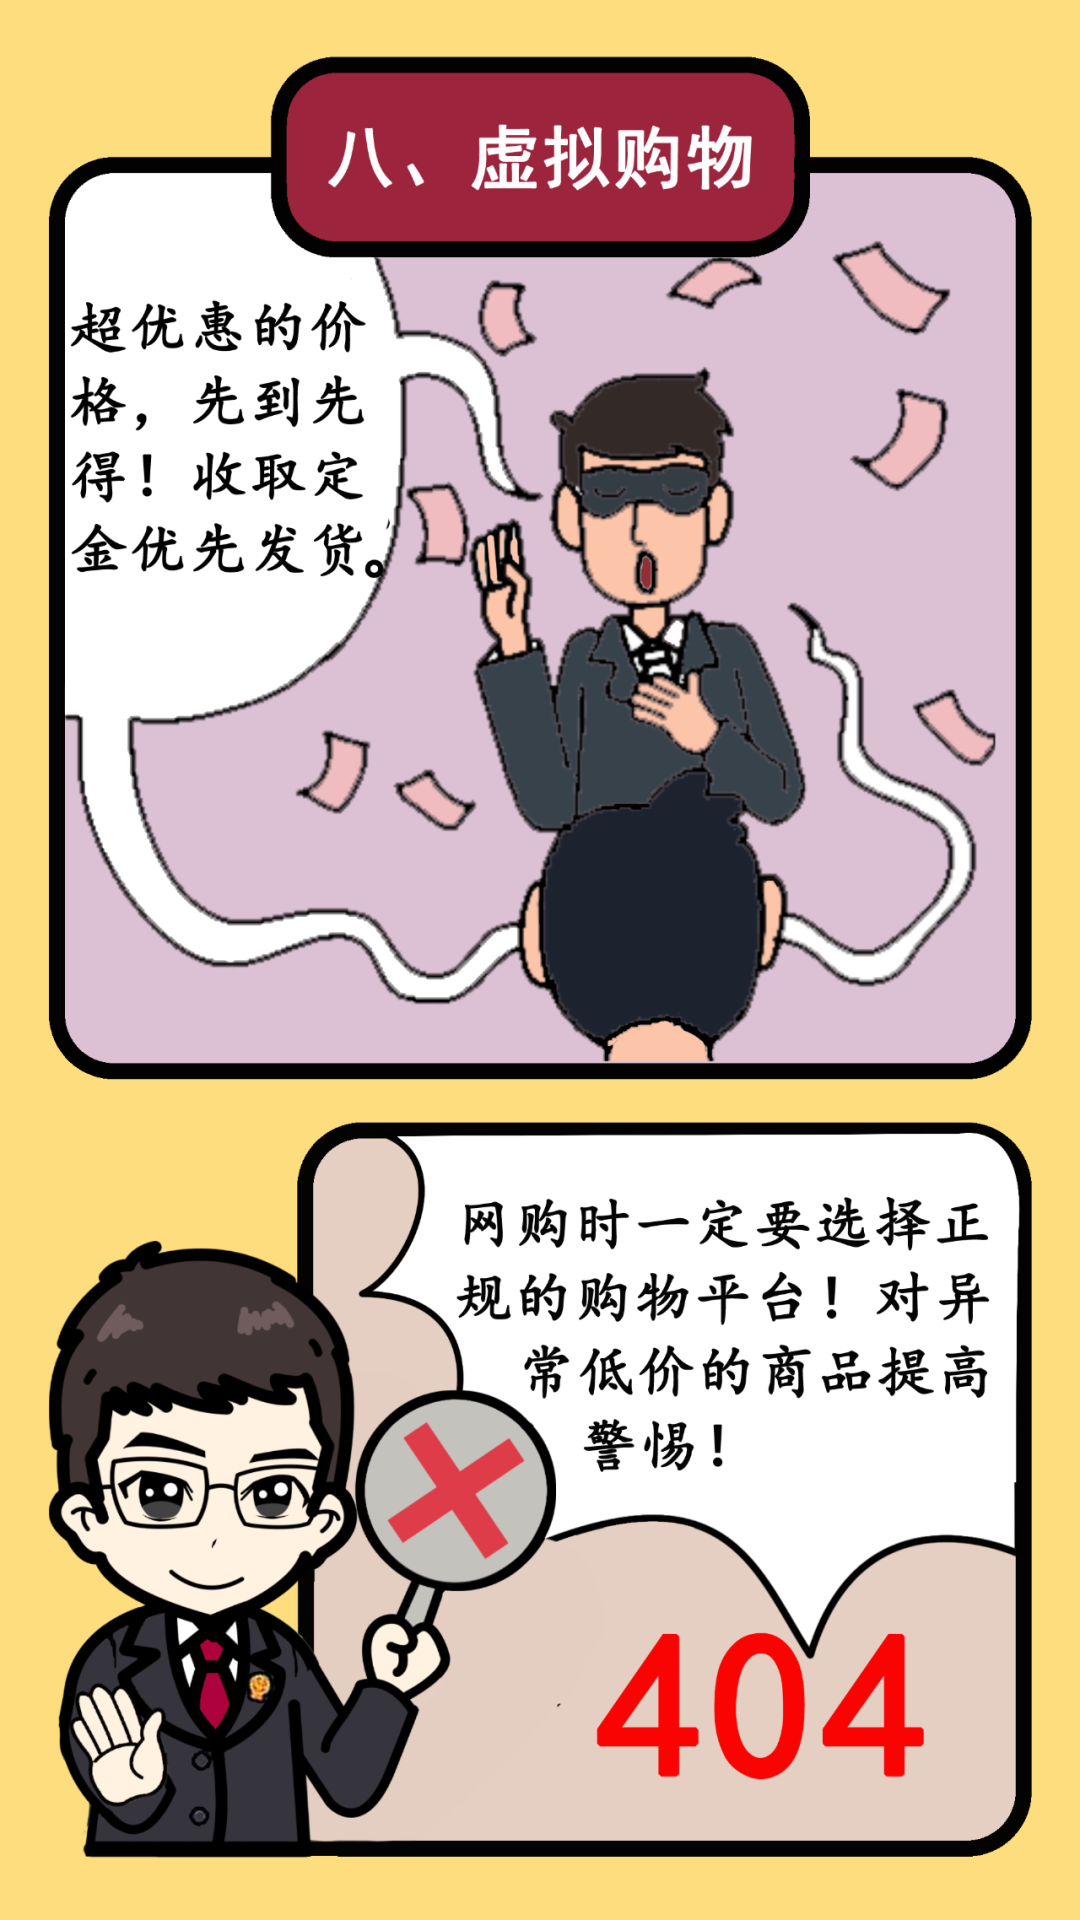 黄白色理性消费拒绝网贷漫画风插画大标题公益宣传中文海报 - 模板 - Canva可画